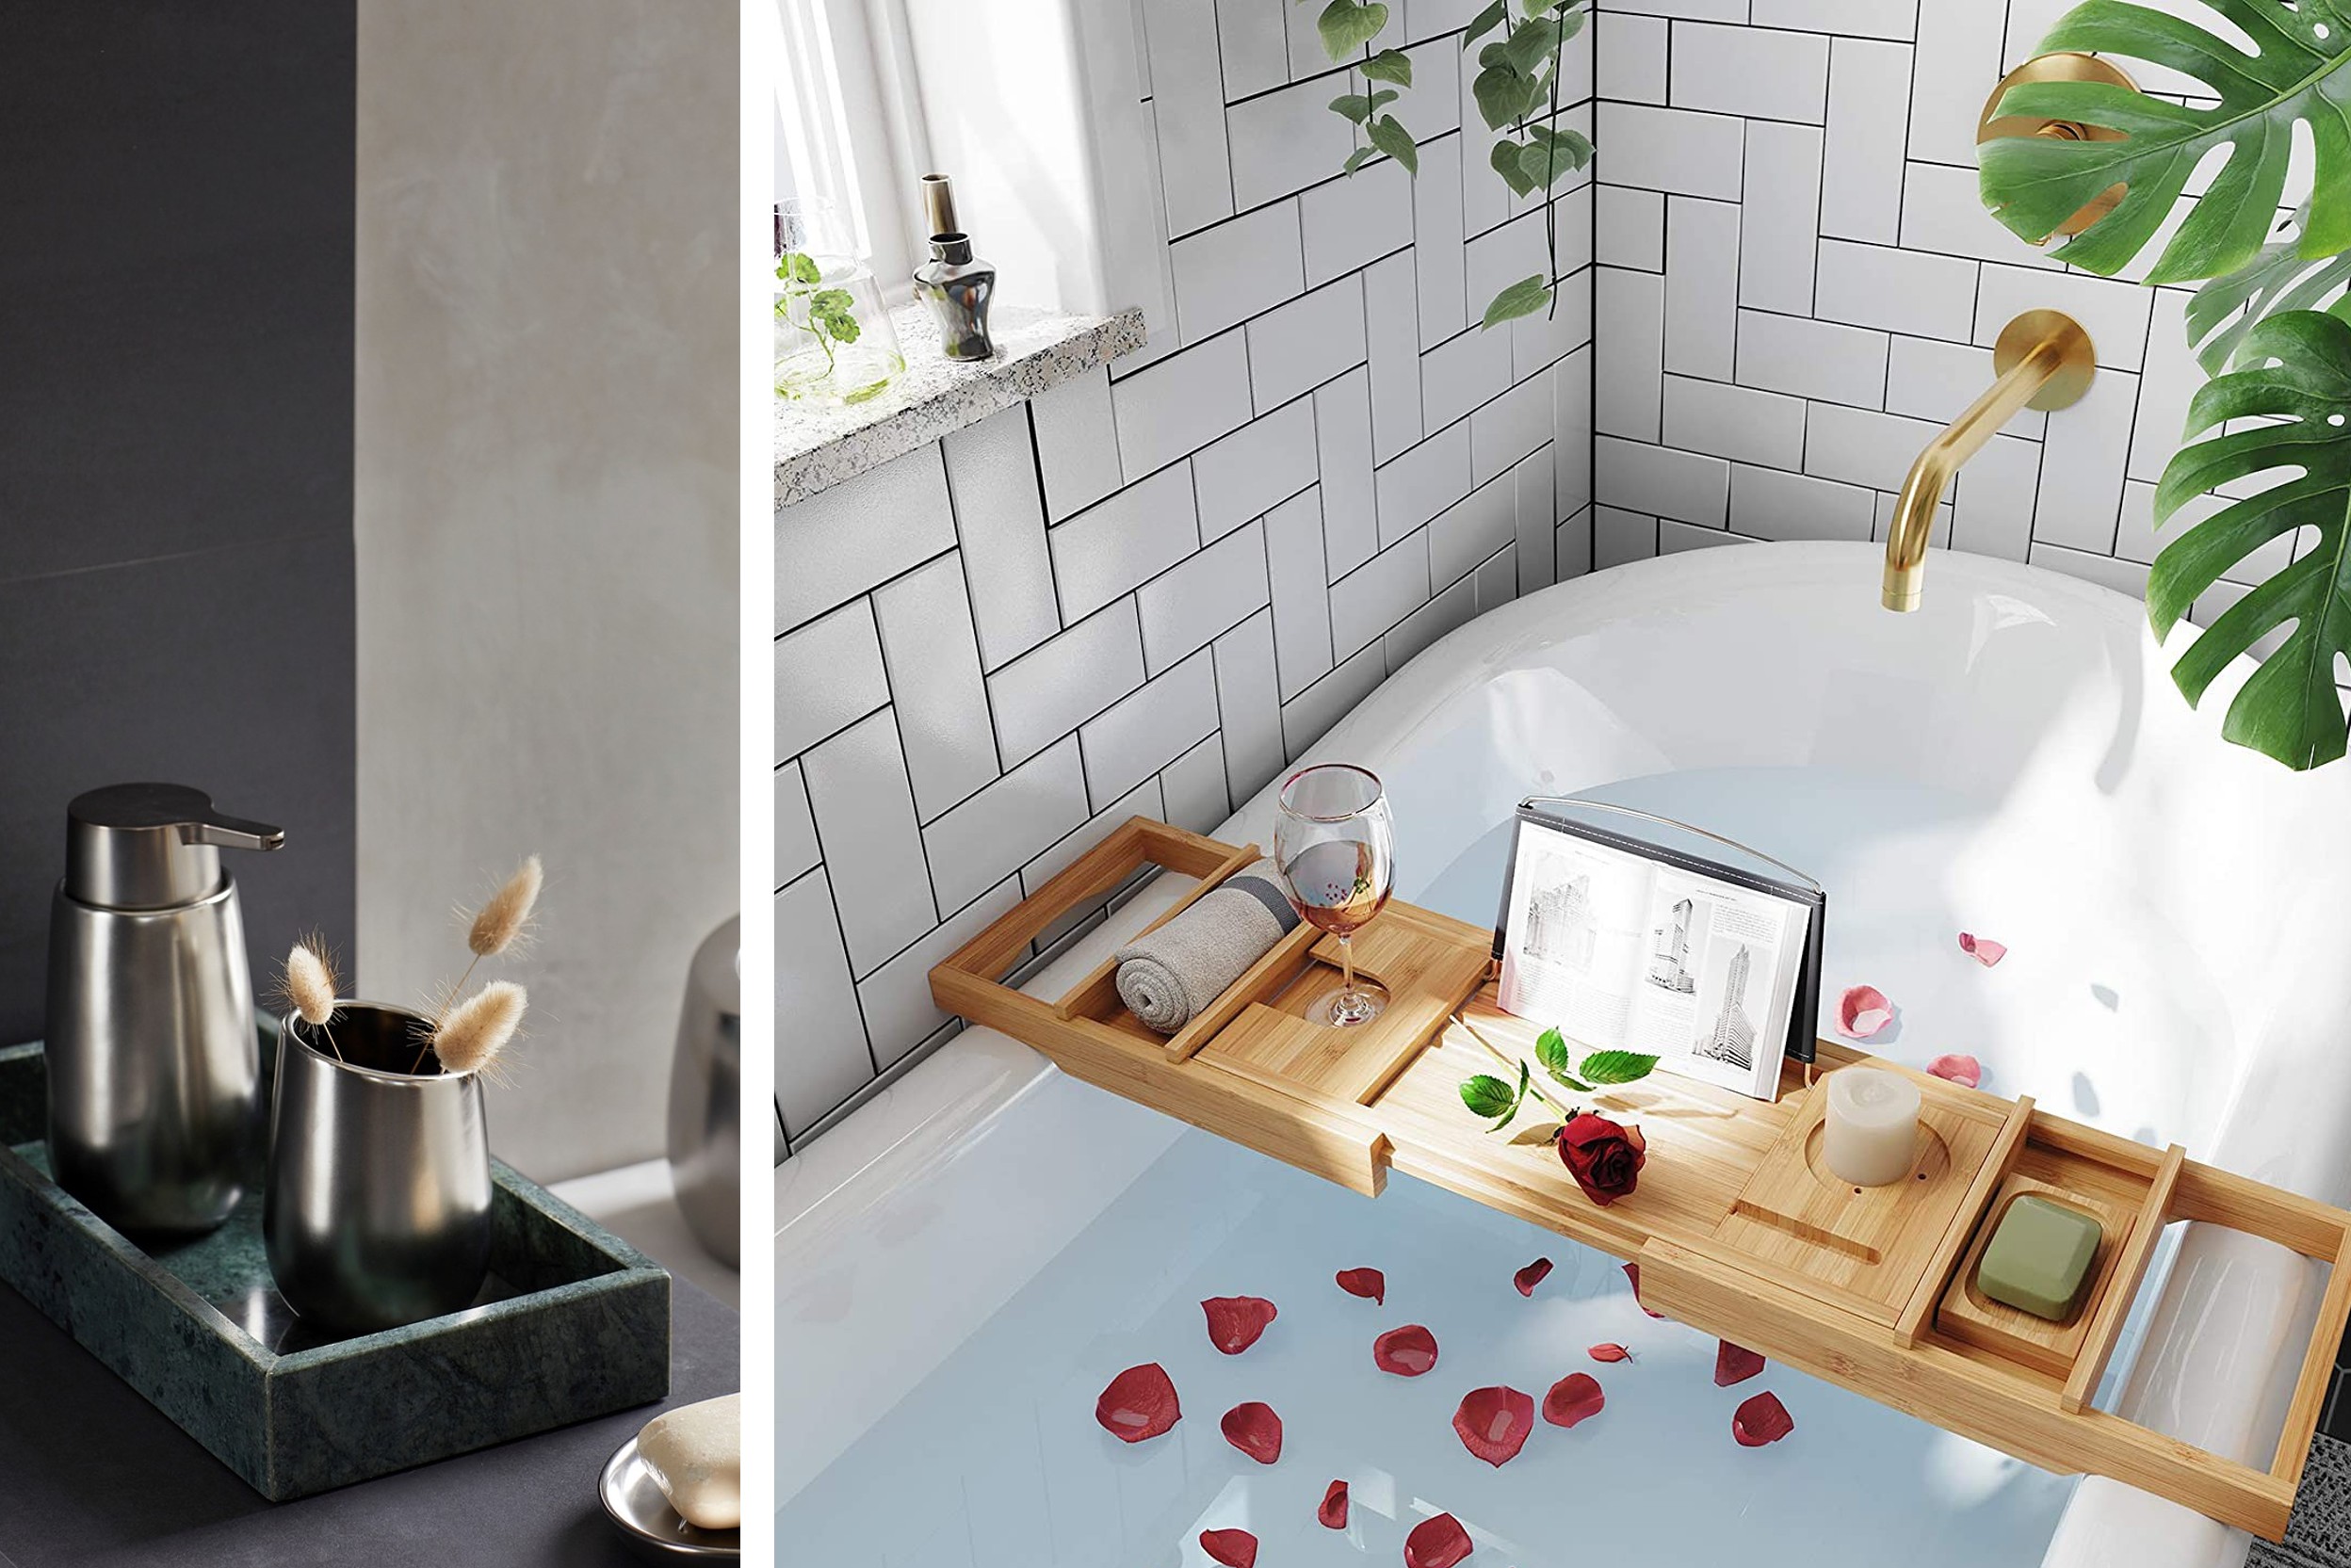 Glänzende Seifenspender und Becher auf Brett; Badewanne mit Rosenblätter und Bambus-Badewannenablage